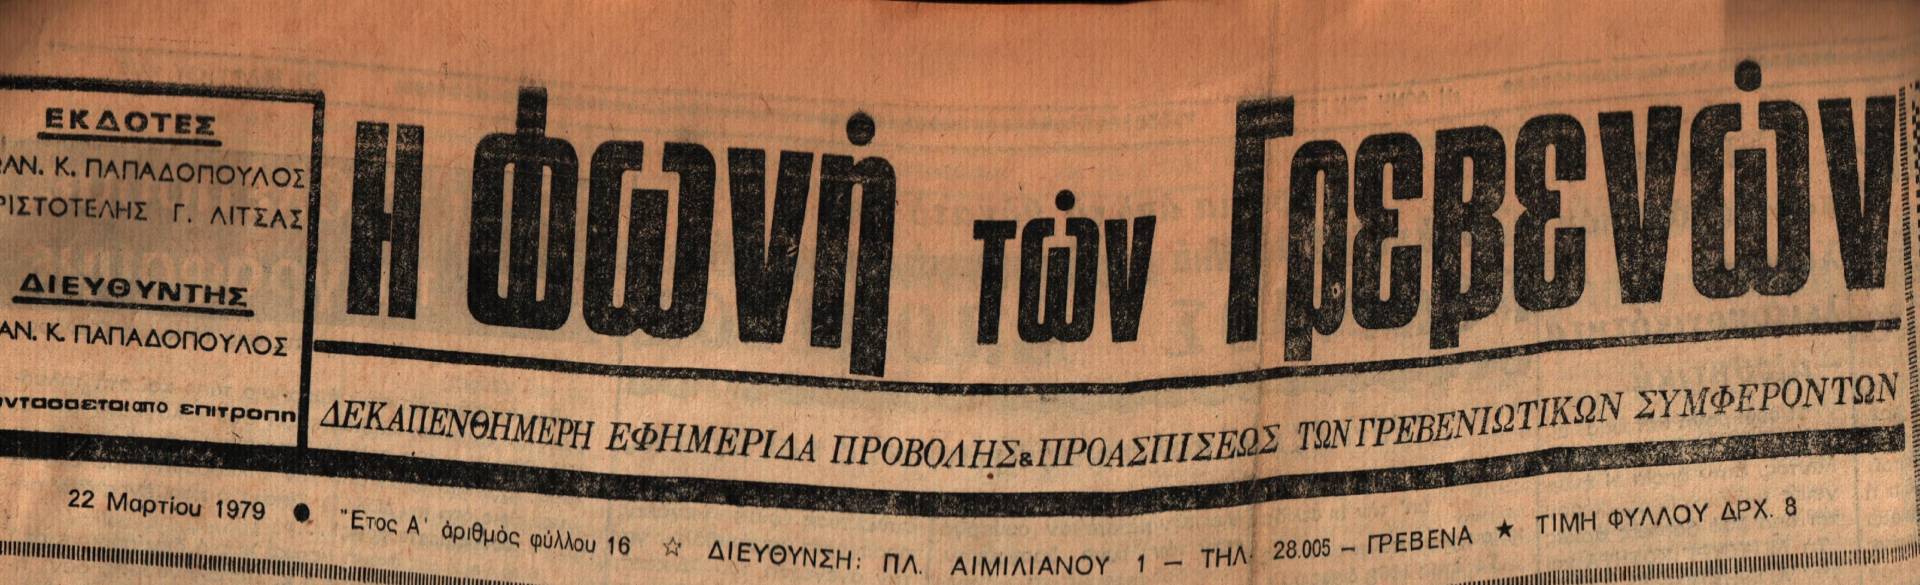 22 Μαρτίου 1979: Η ιστορία των Γρεβενών μέσα από τον Τοπικό Τύπο.Σήμερα:ΓΕΩΡΓΙΟΣ ΜΠΟΥΣΙΟΣ